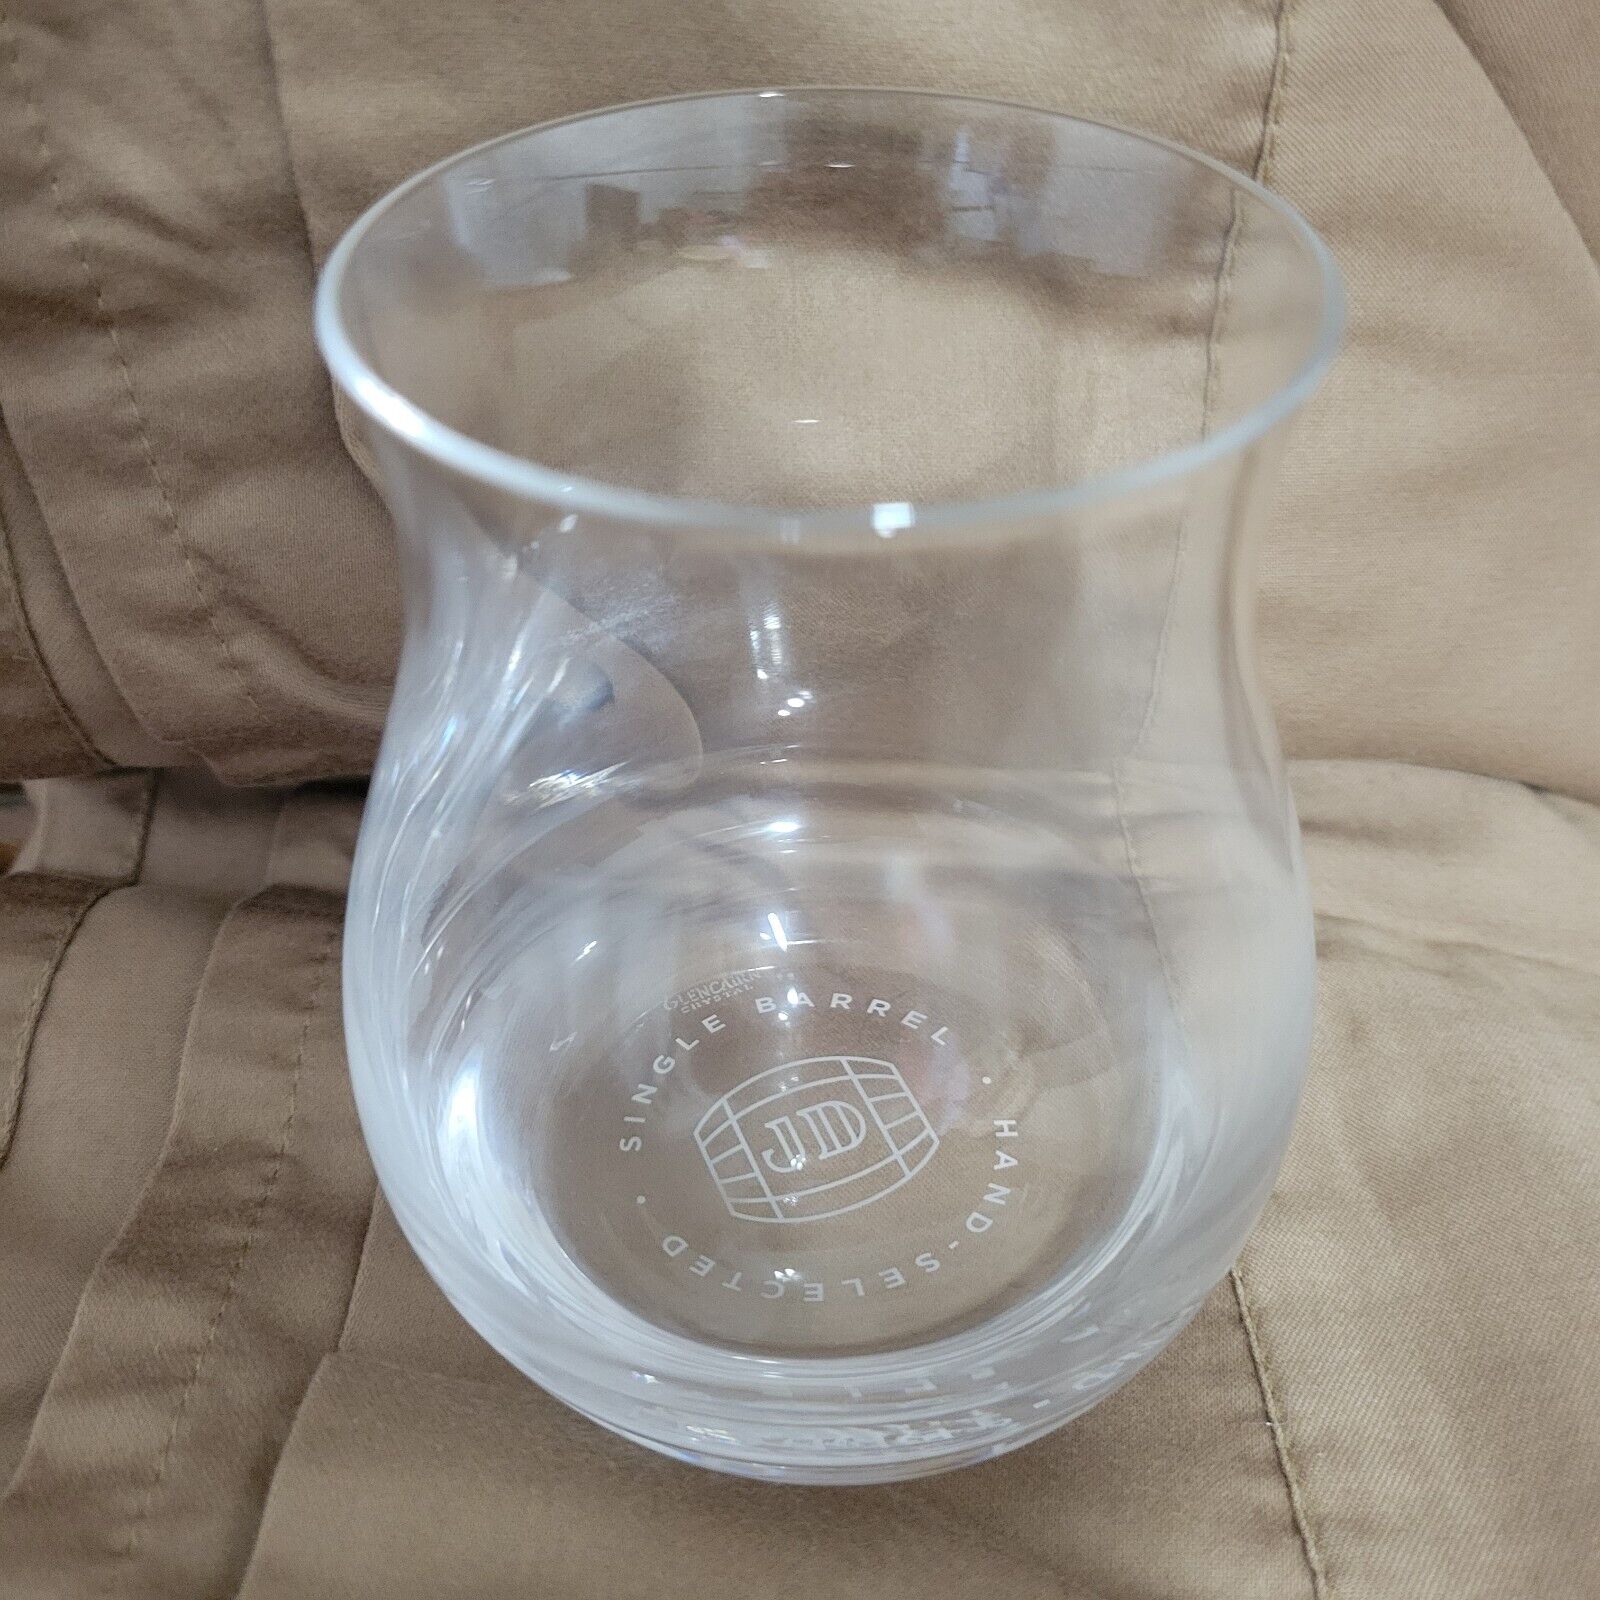 Glencairn Crystal Whiskey Glass